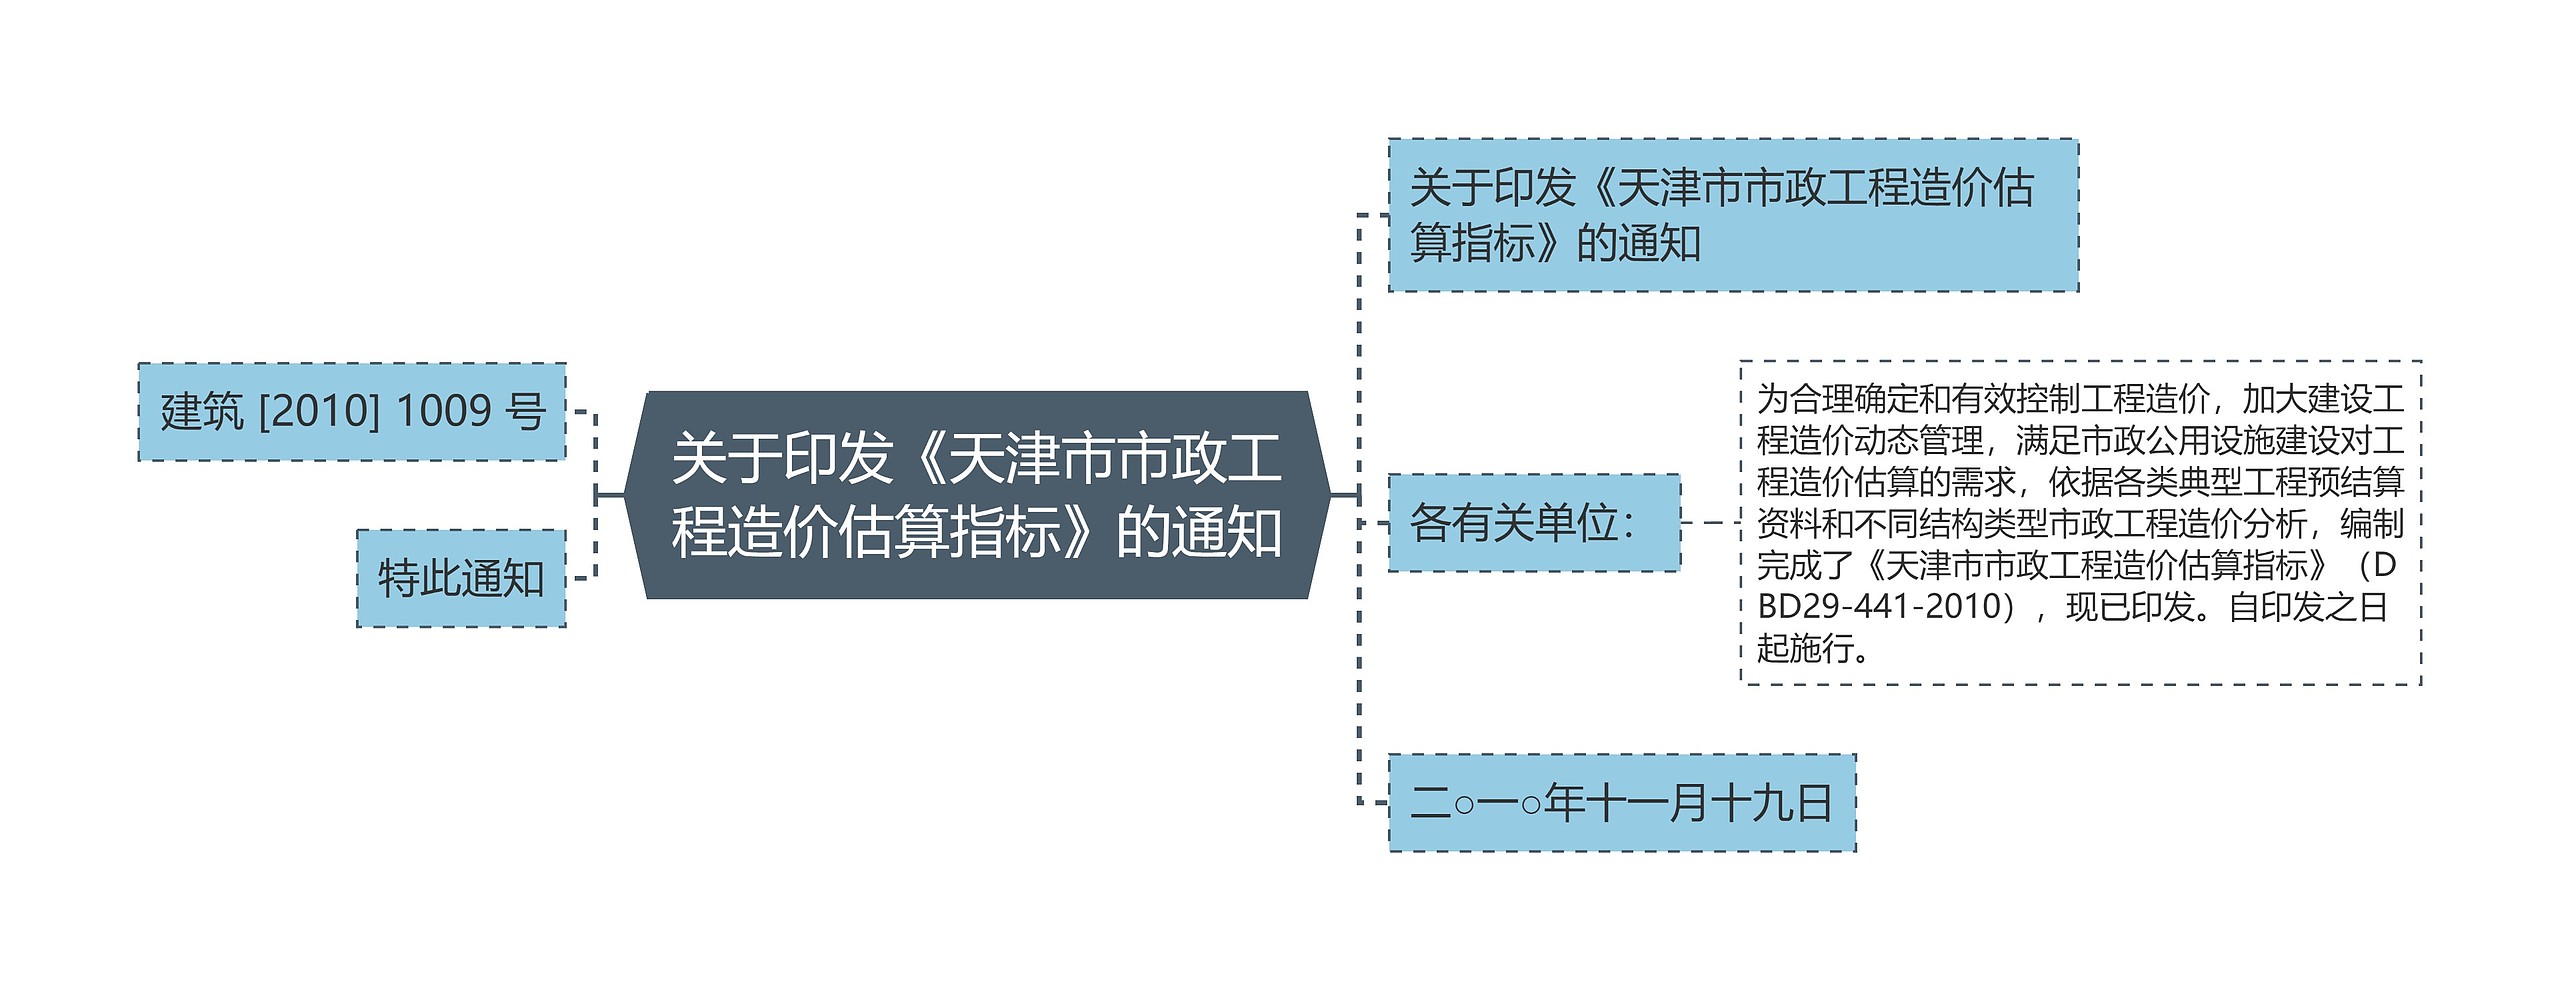 关于印发《天津市市政工程造价估算指标》的通知思维导图